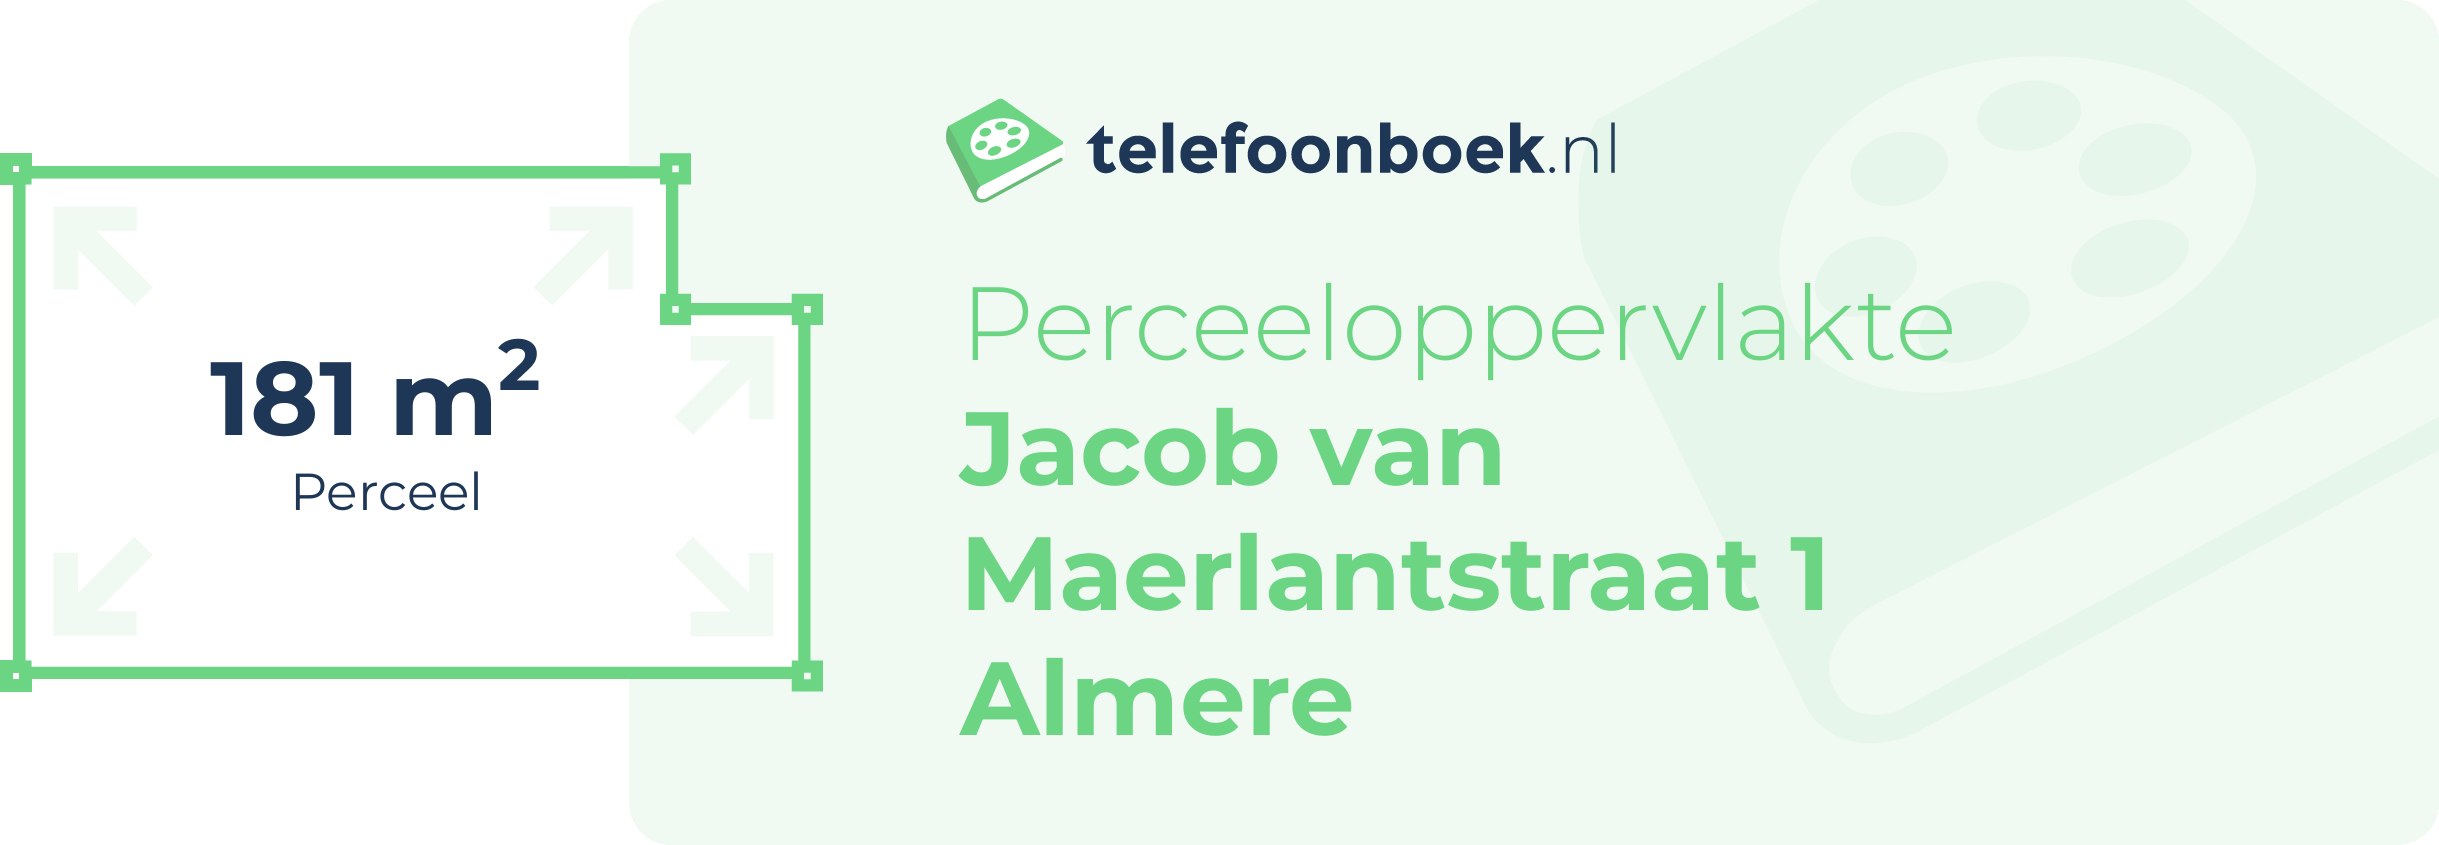 Perceeloppervlakte Jacob Van Maerlantstraat 1 Almere